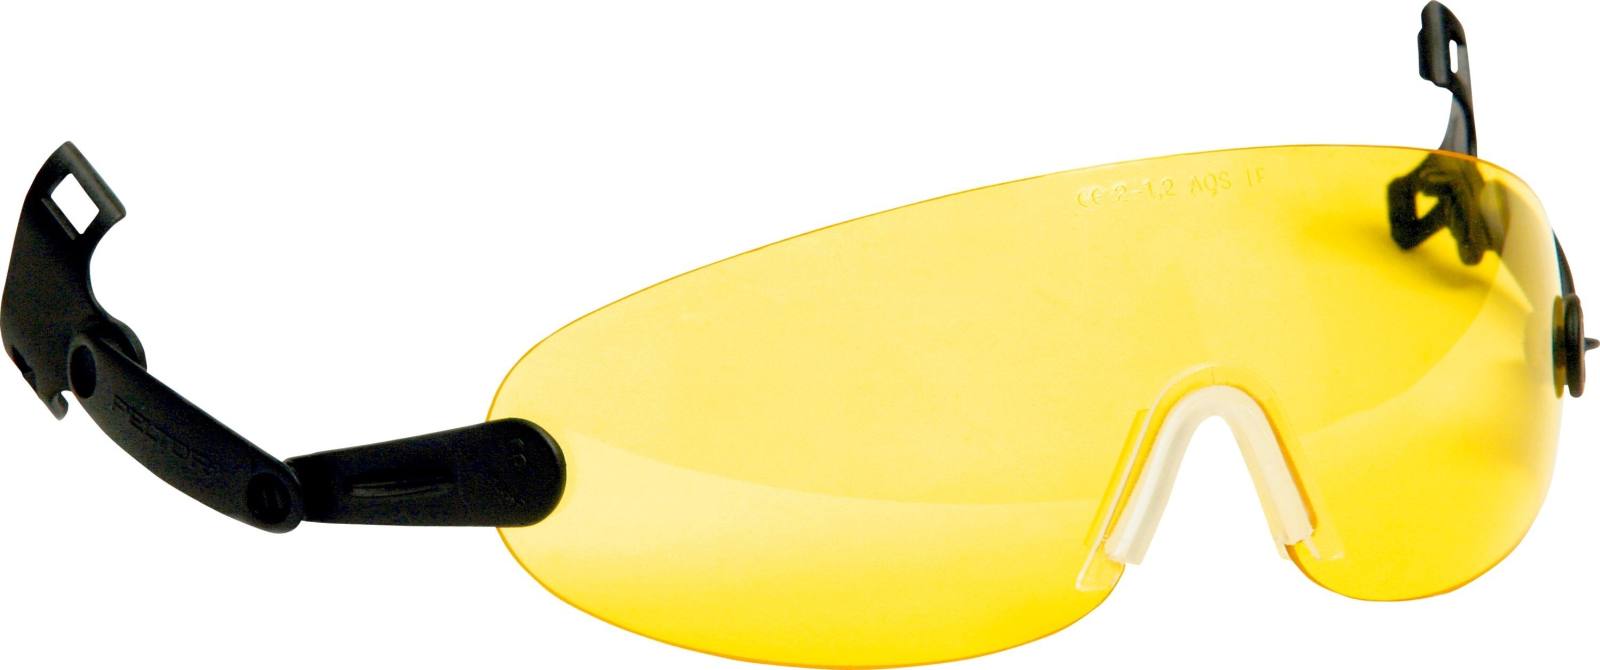 3M Integreerbare veiligheidsbril voor veiligheidshelm, geel, V9A